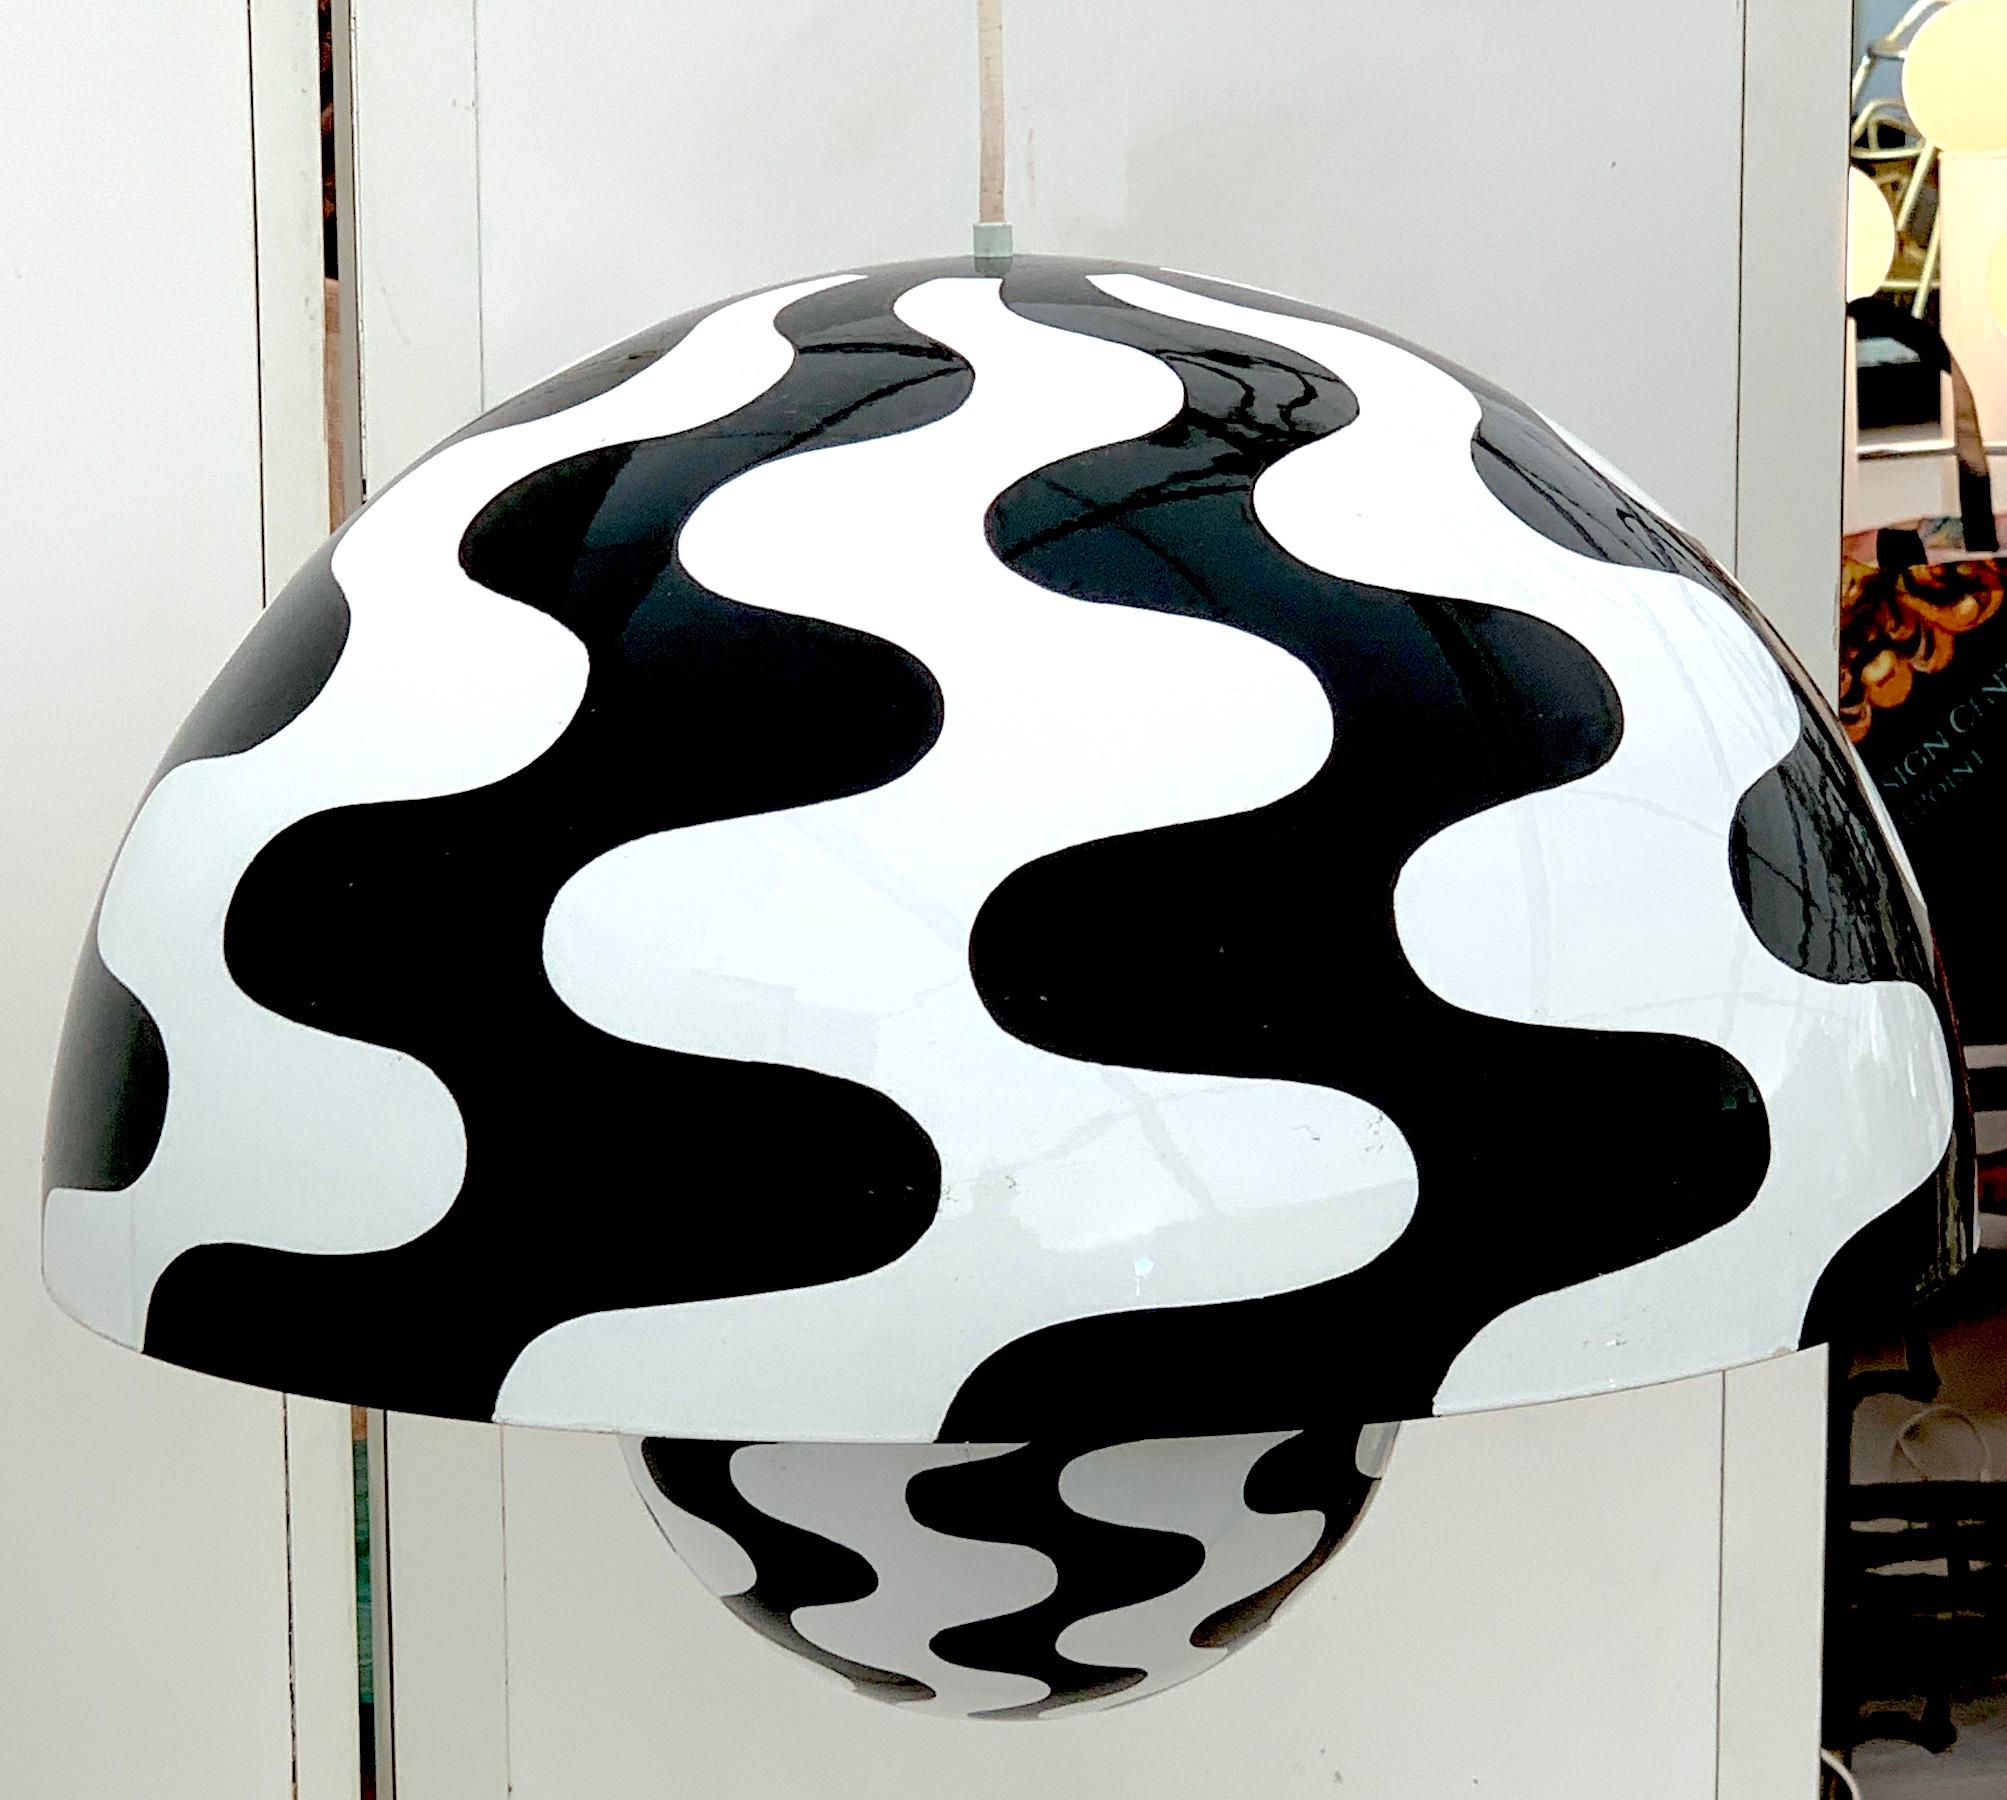 Suspension 'Flower Pot' noir et blanc de Verner Panton pour Louis Poulsen, 1971
Mettez en valeur votre espace intérieur avec cette suspension rare et emblématique 